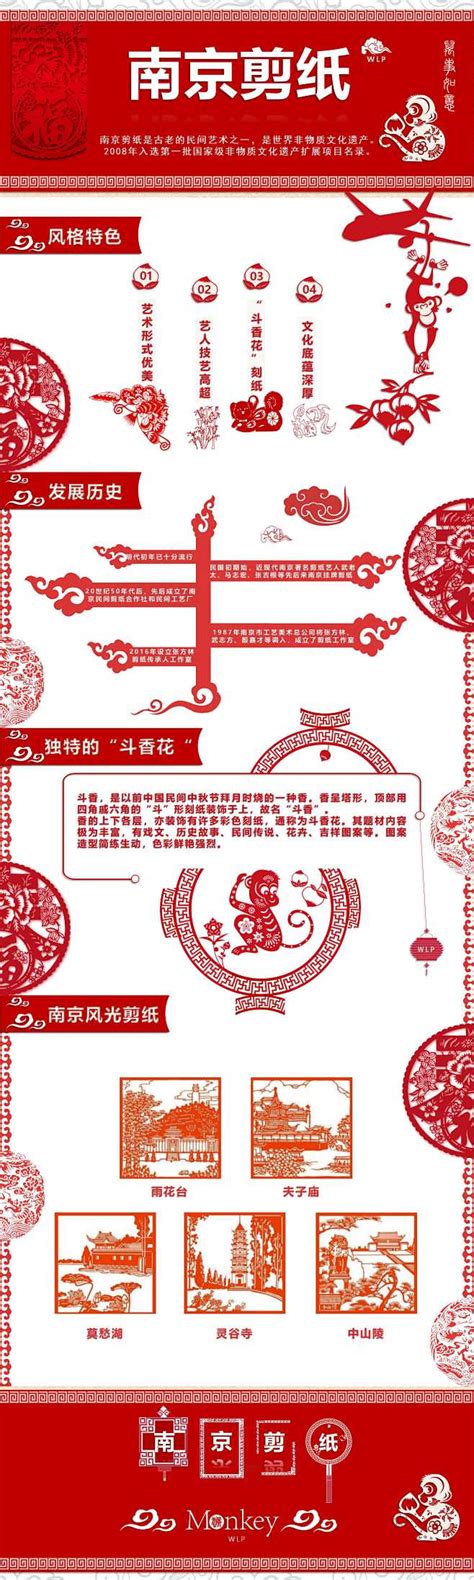 框架广告 南京信息工程大学 - 校果，校园广告投放